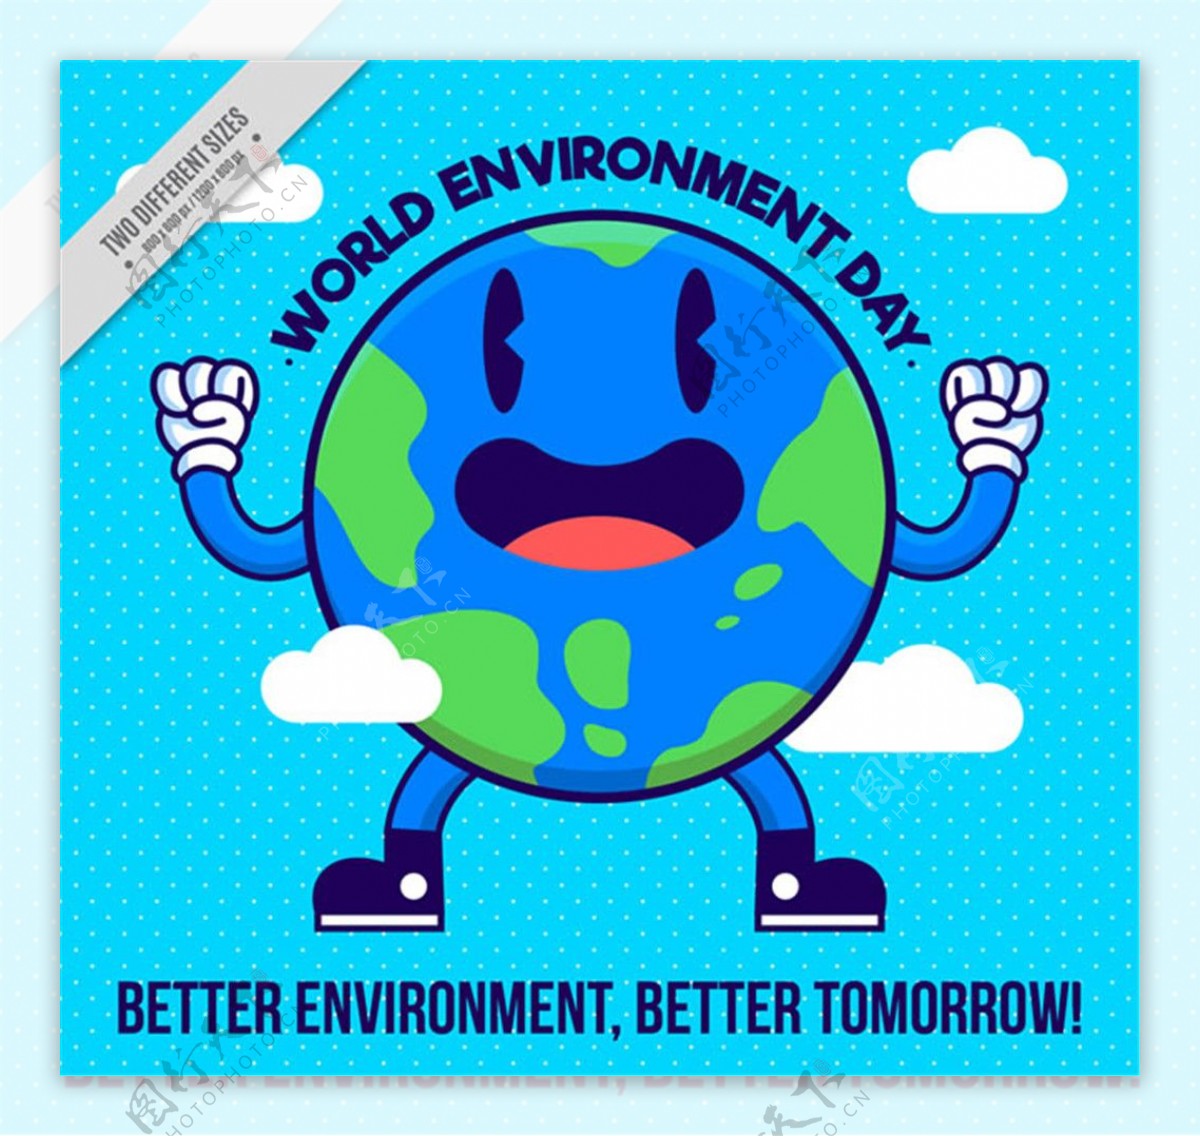 卡通地球世界环境日海报矢量素材